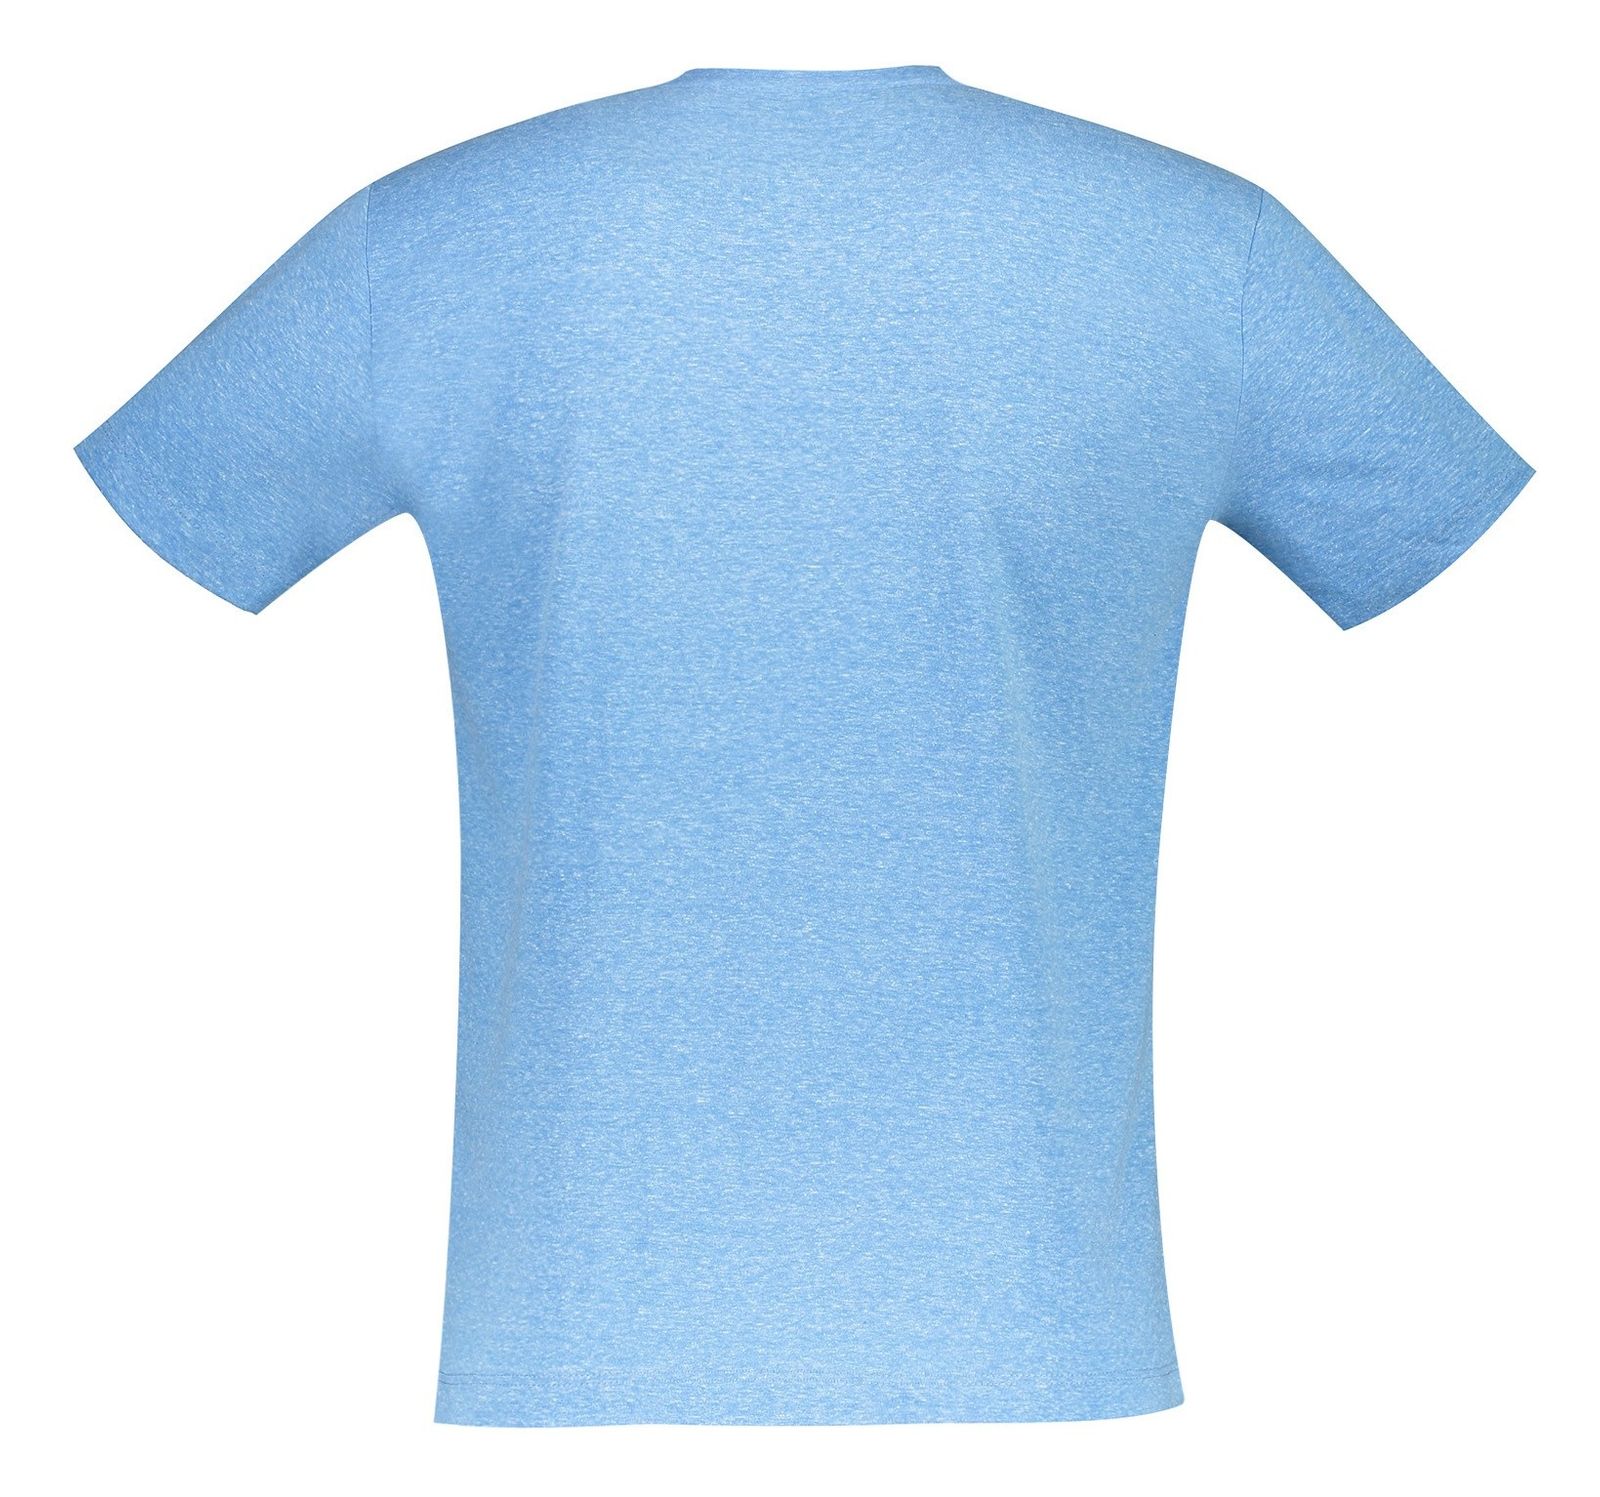 تی شرت یقه گرد مردانه - متی - آبي روشن - 3